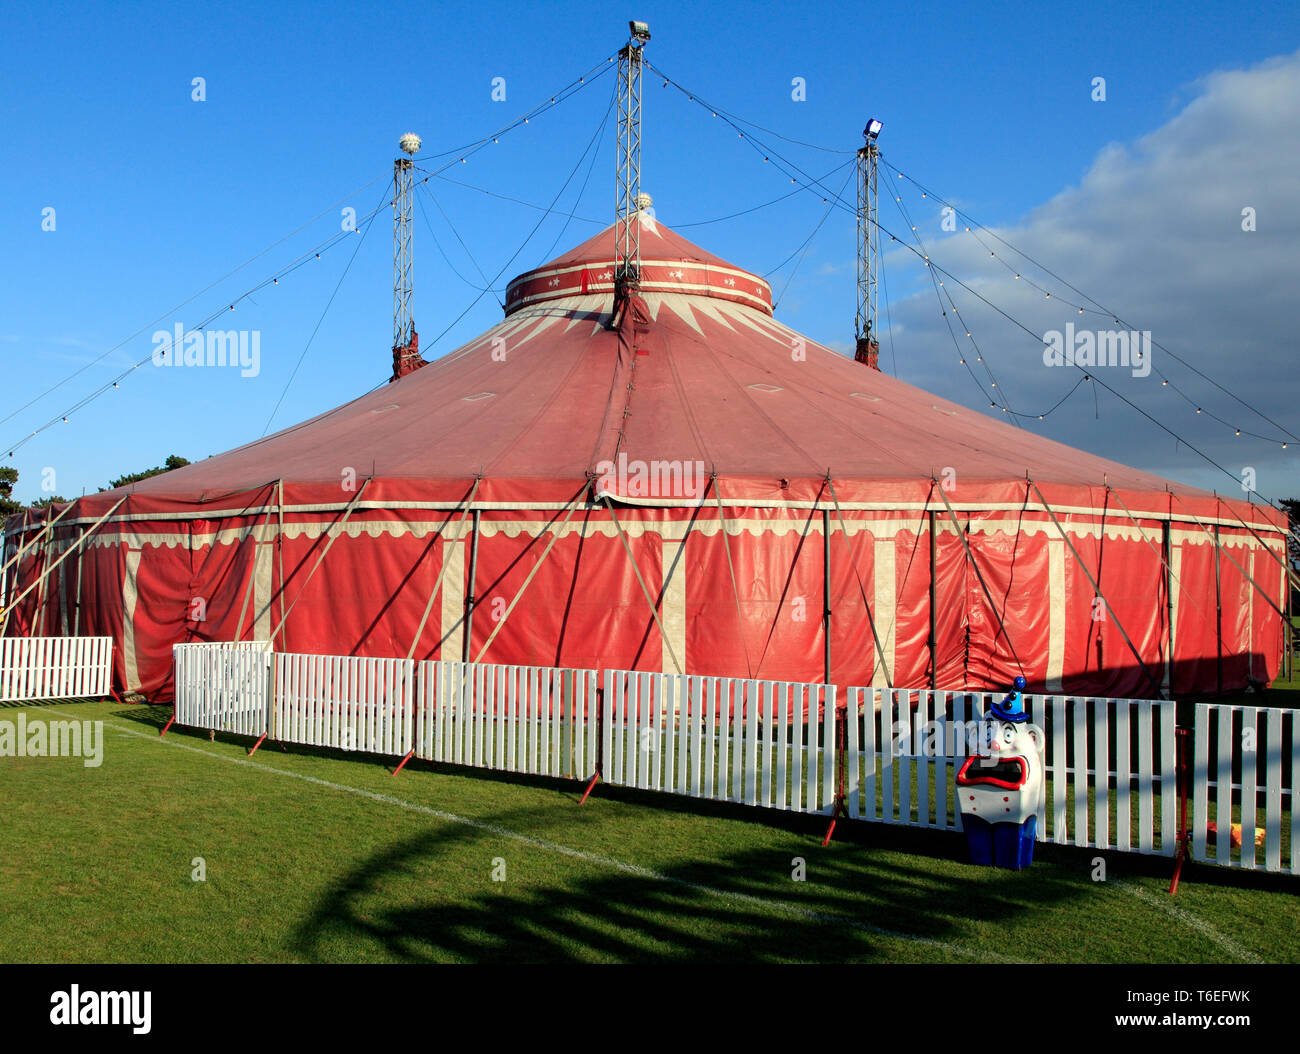 International du Cirque Russells, exposition itinérante, véhicule de transport, Big Top tente, Hunstanton, Norfolk, Royaume-Uni. Banque D'Images